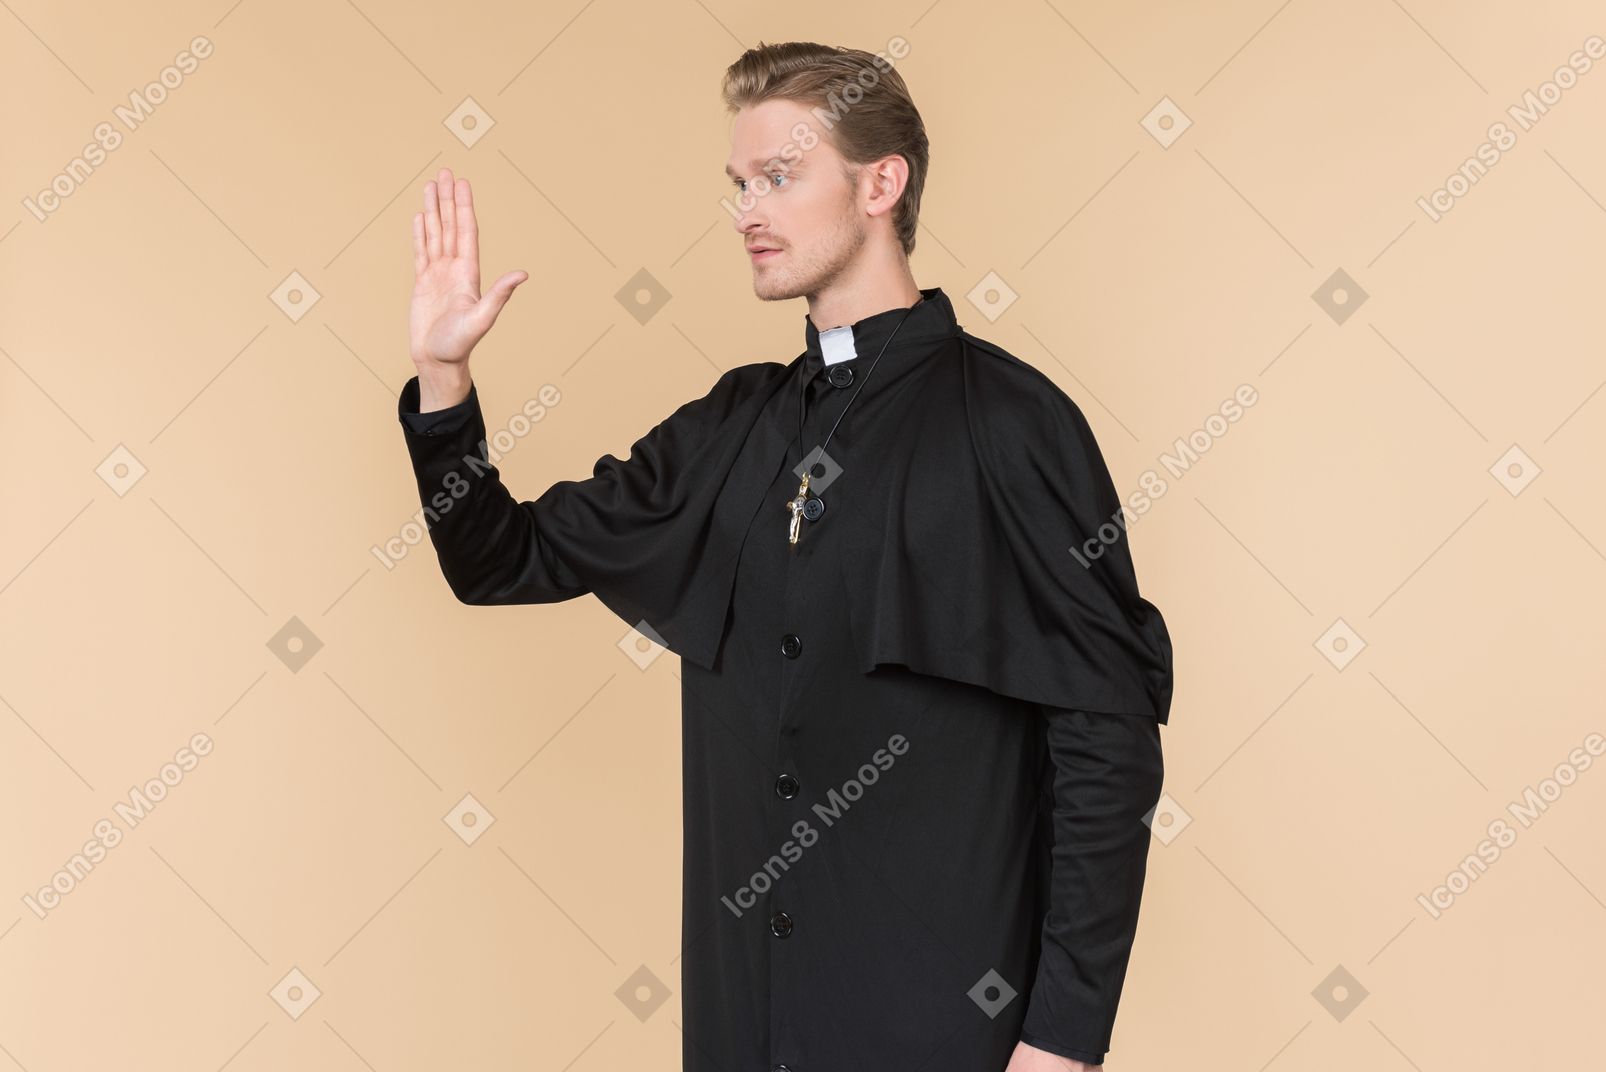 그의 손을 위로 반 옆으로 서있는 가톨릭 신부